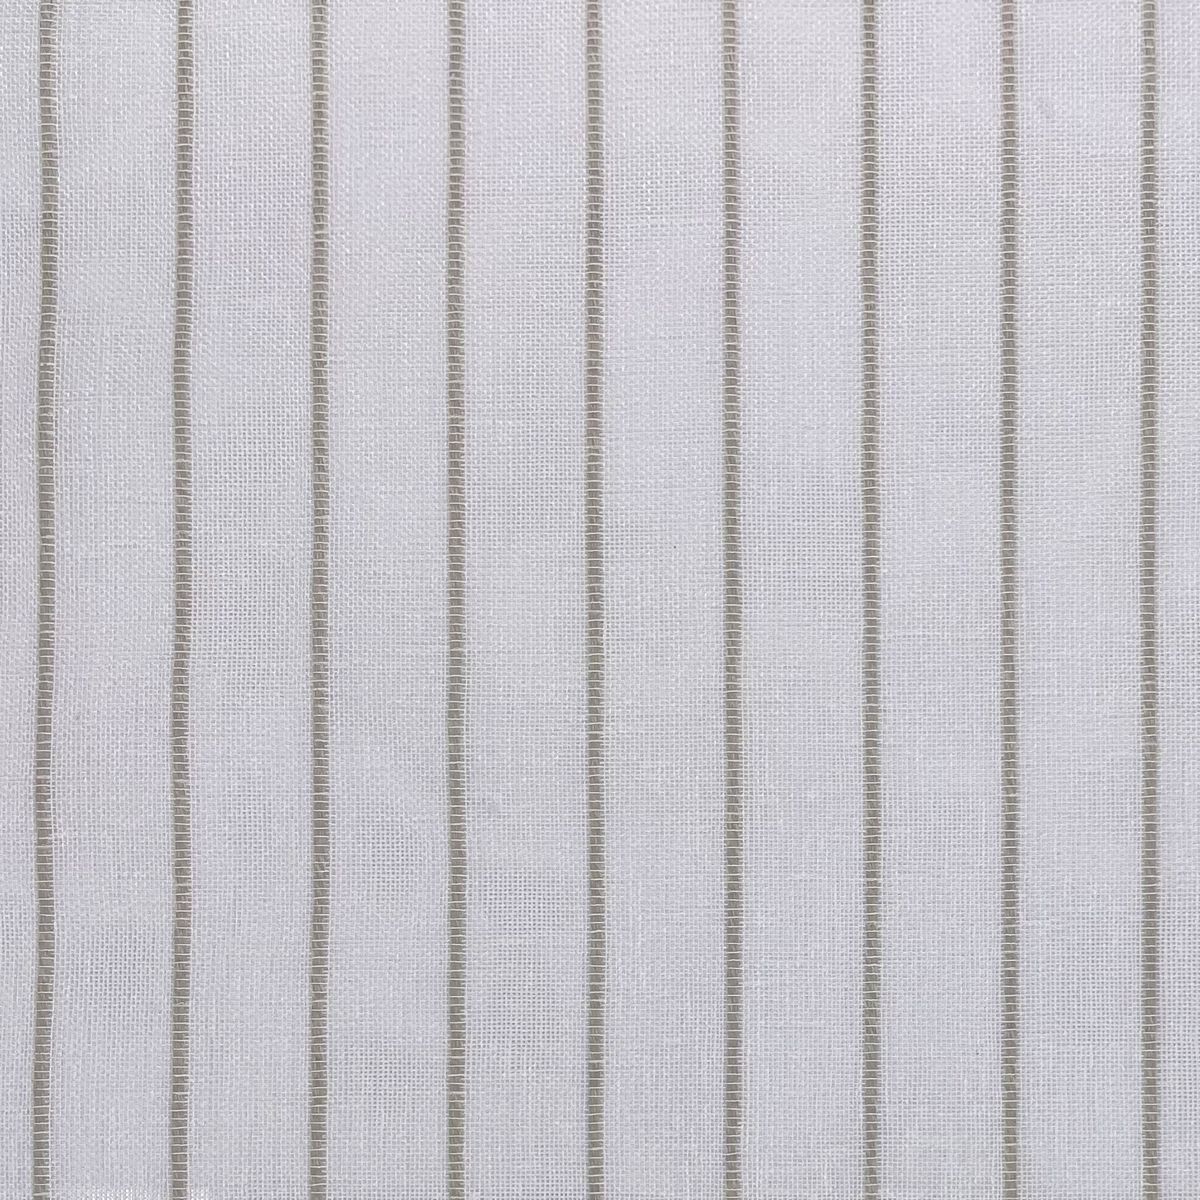 Mykonos Linen Fabric by Chatham Glyn